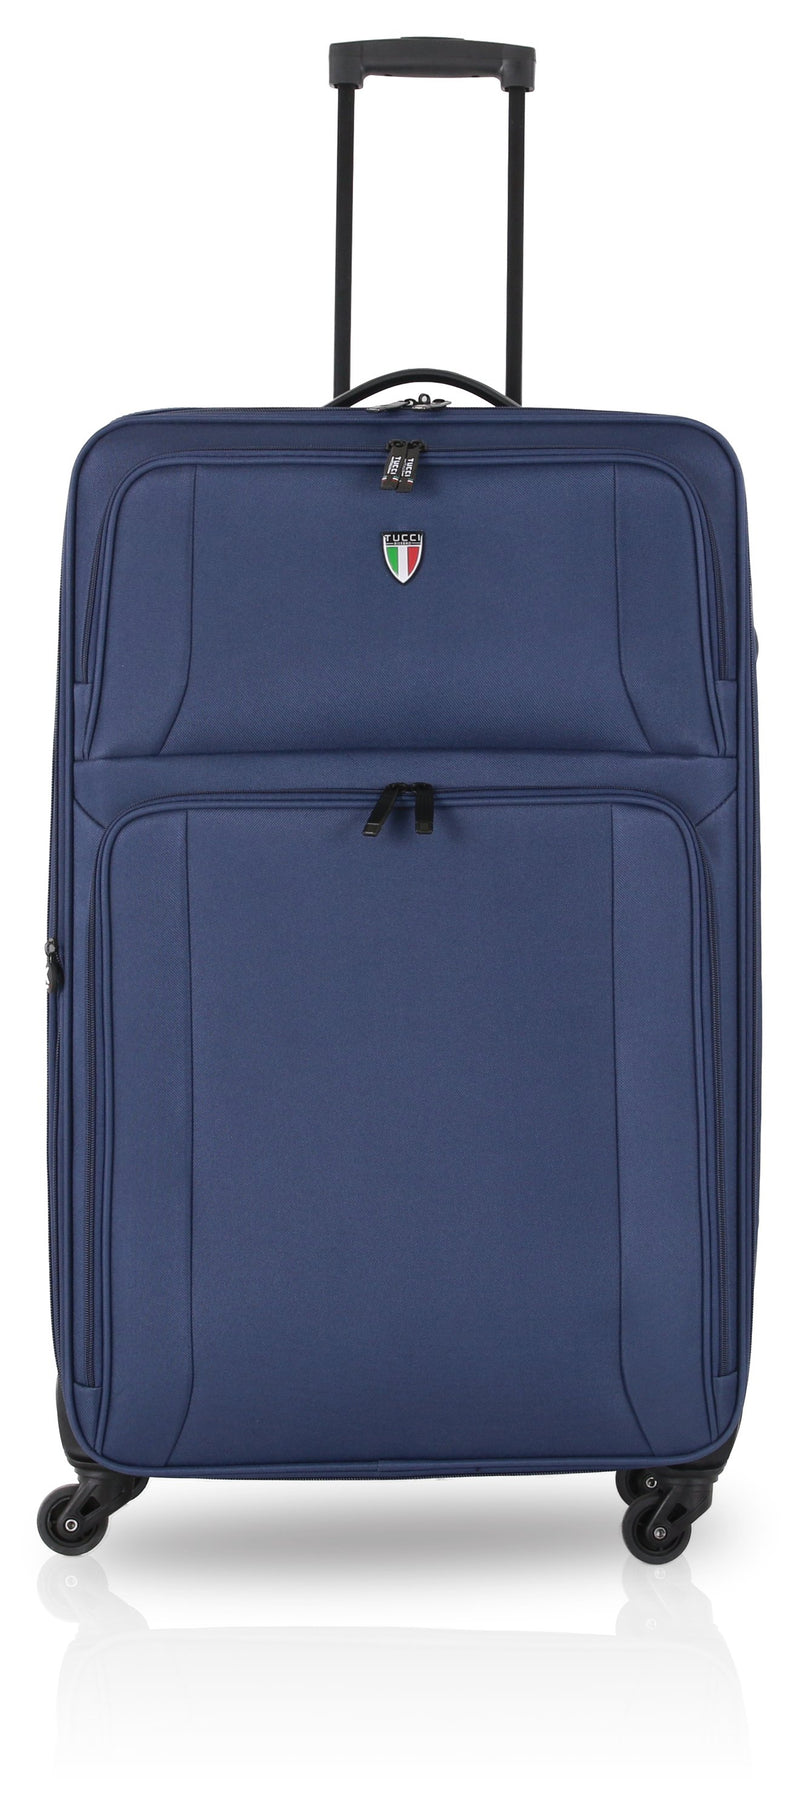 TUCCI Italy DISINVOLTA 24" Medium Luggage Suitcase